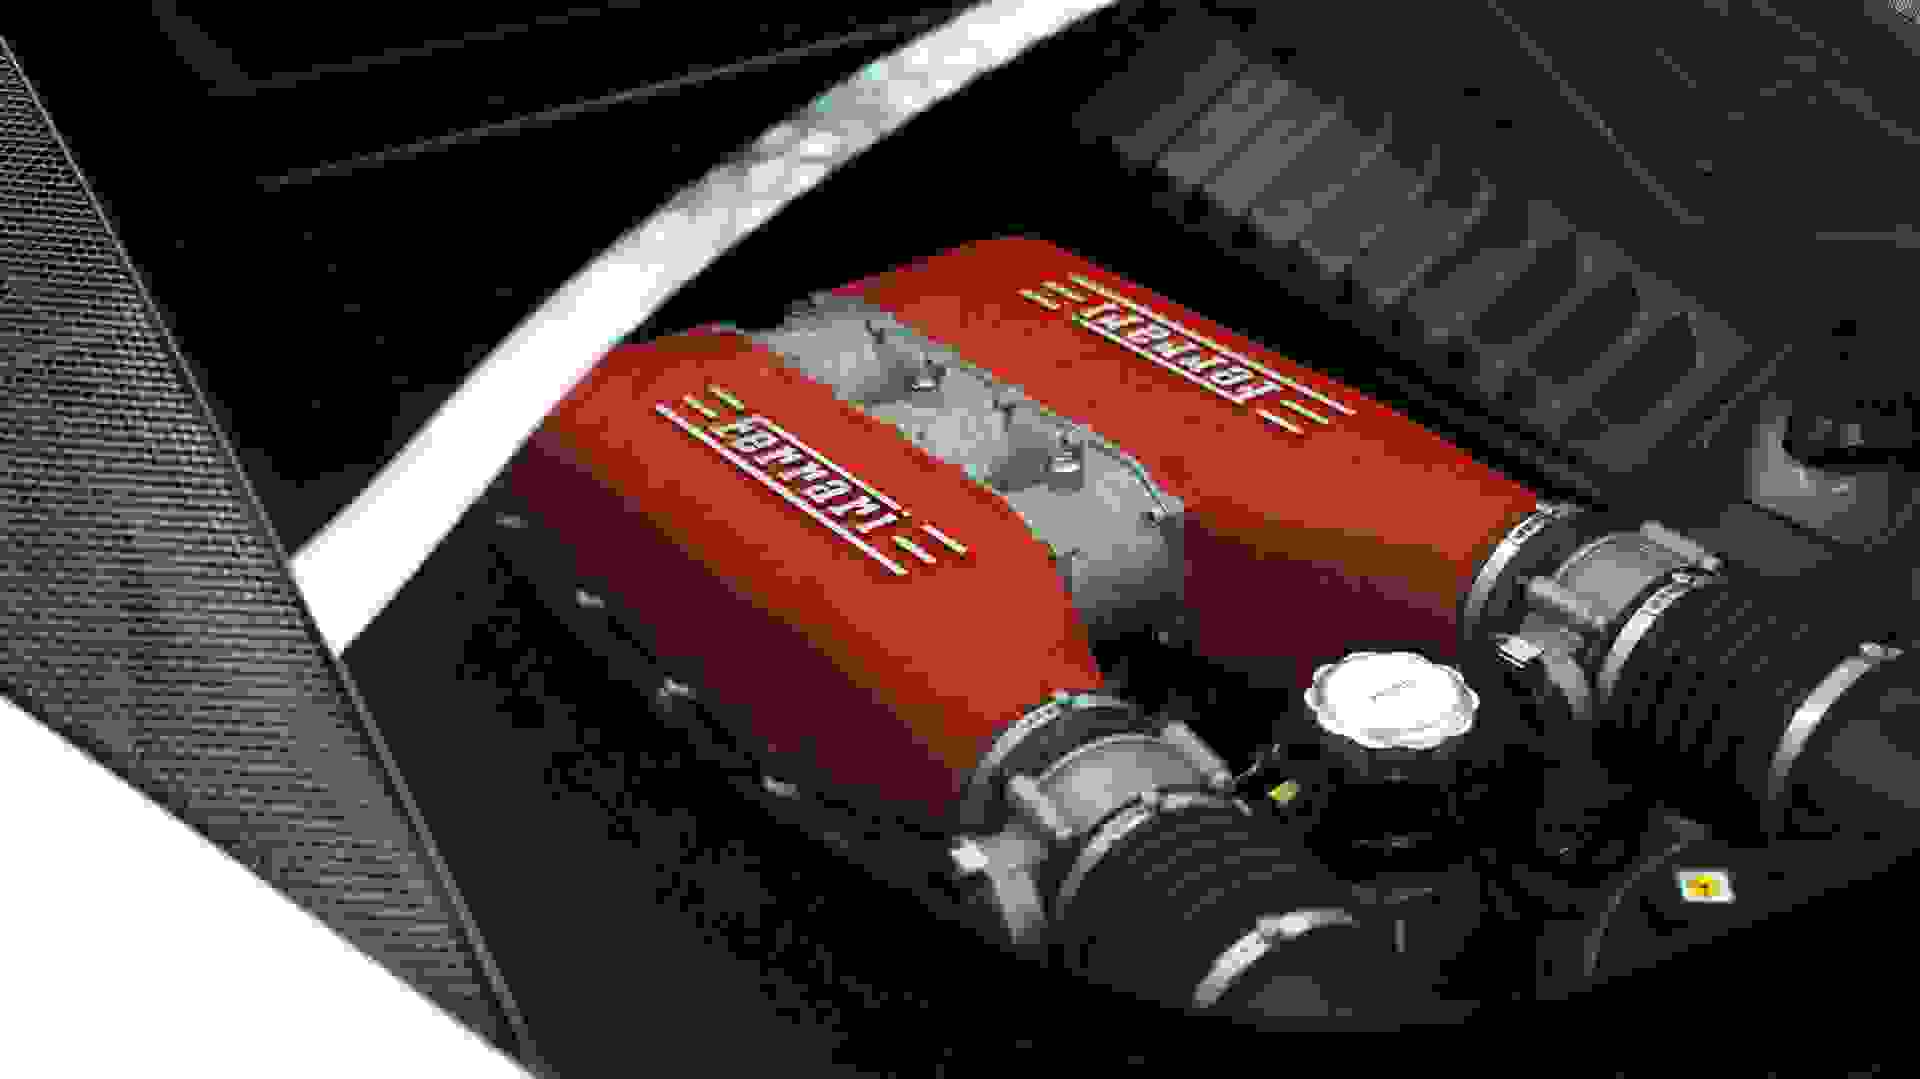 Ferrari 458 Photo 9f9bd0d8-1d55-46df-8f6e-771ad008801b.jpg